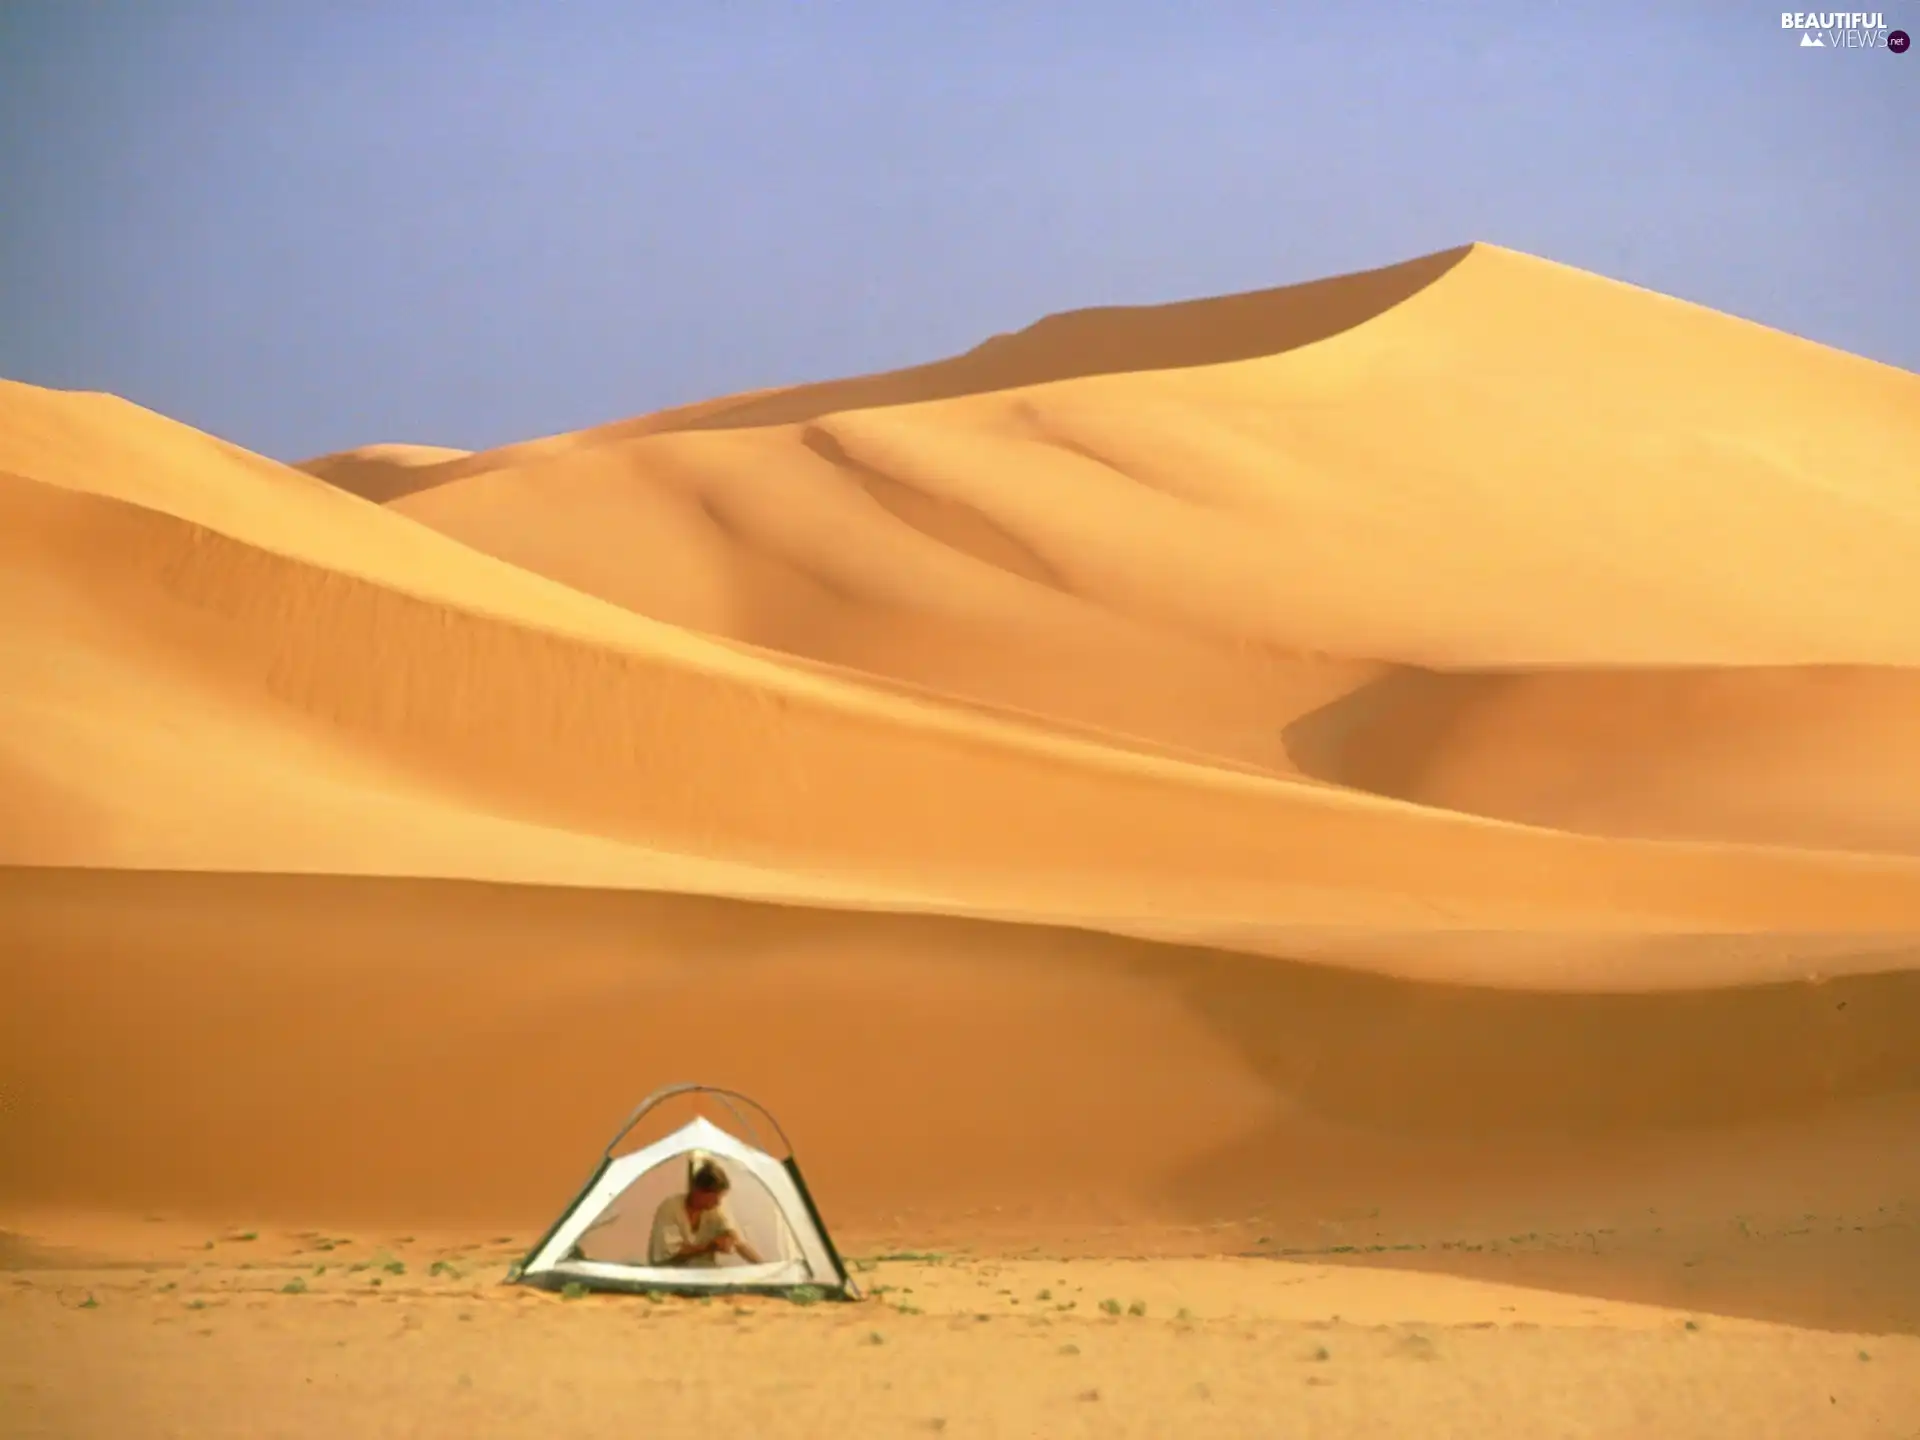 Desert, hermit, Tent, Sand